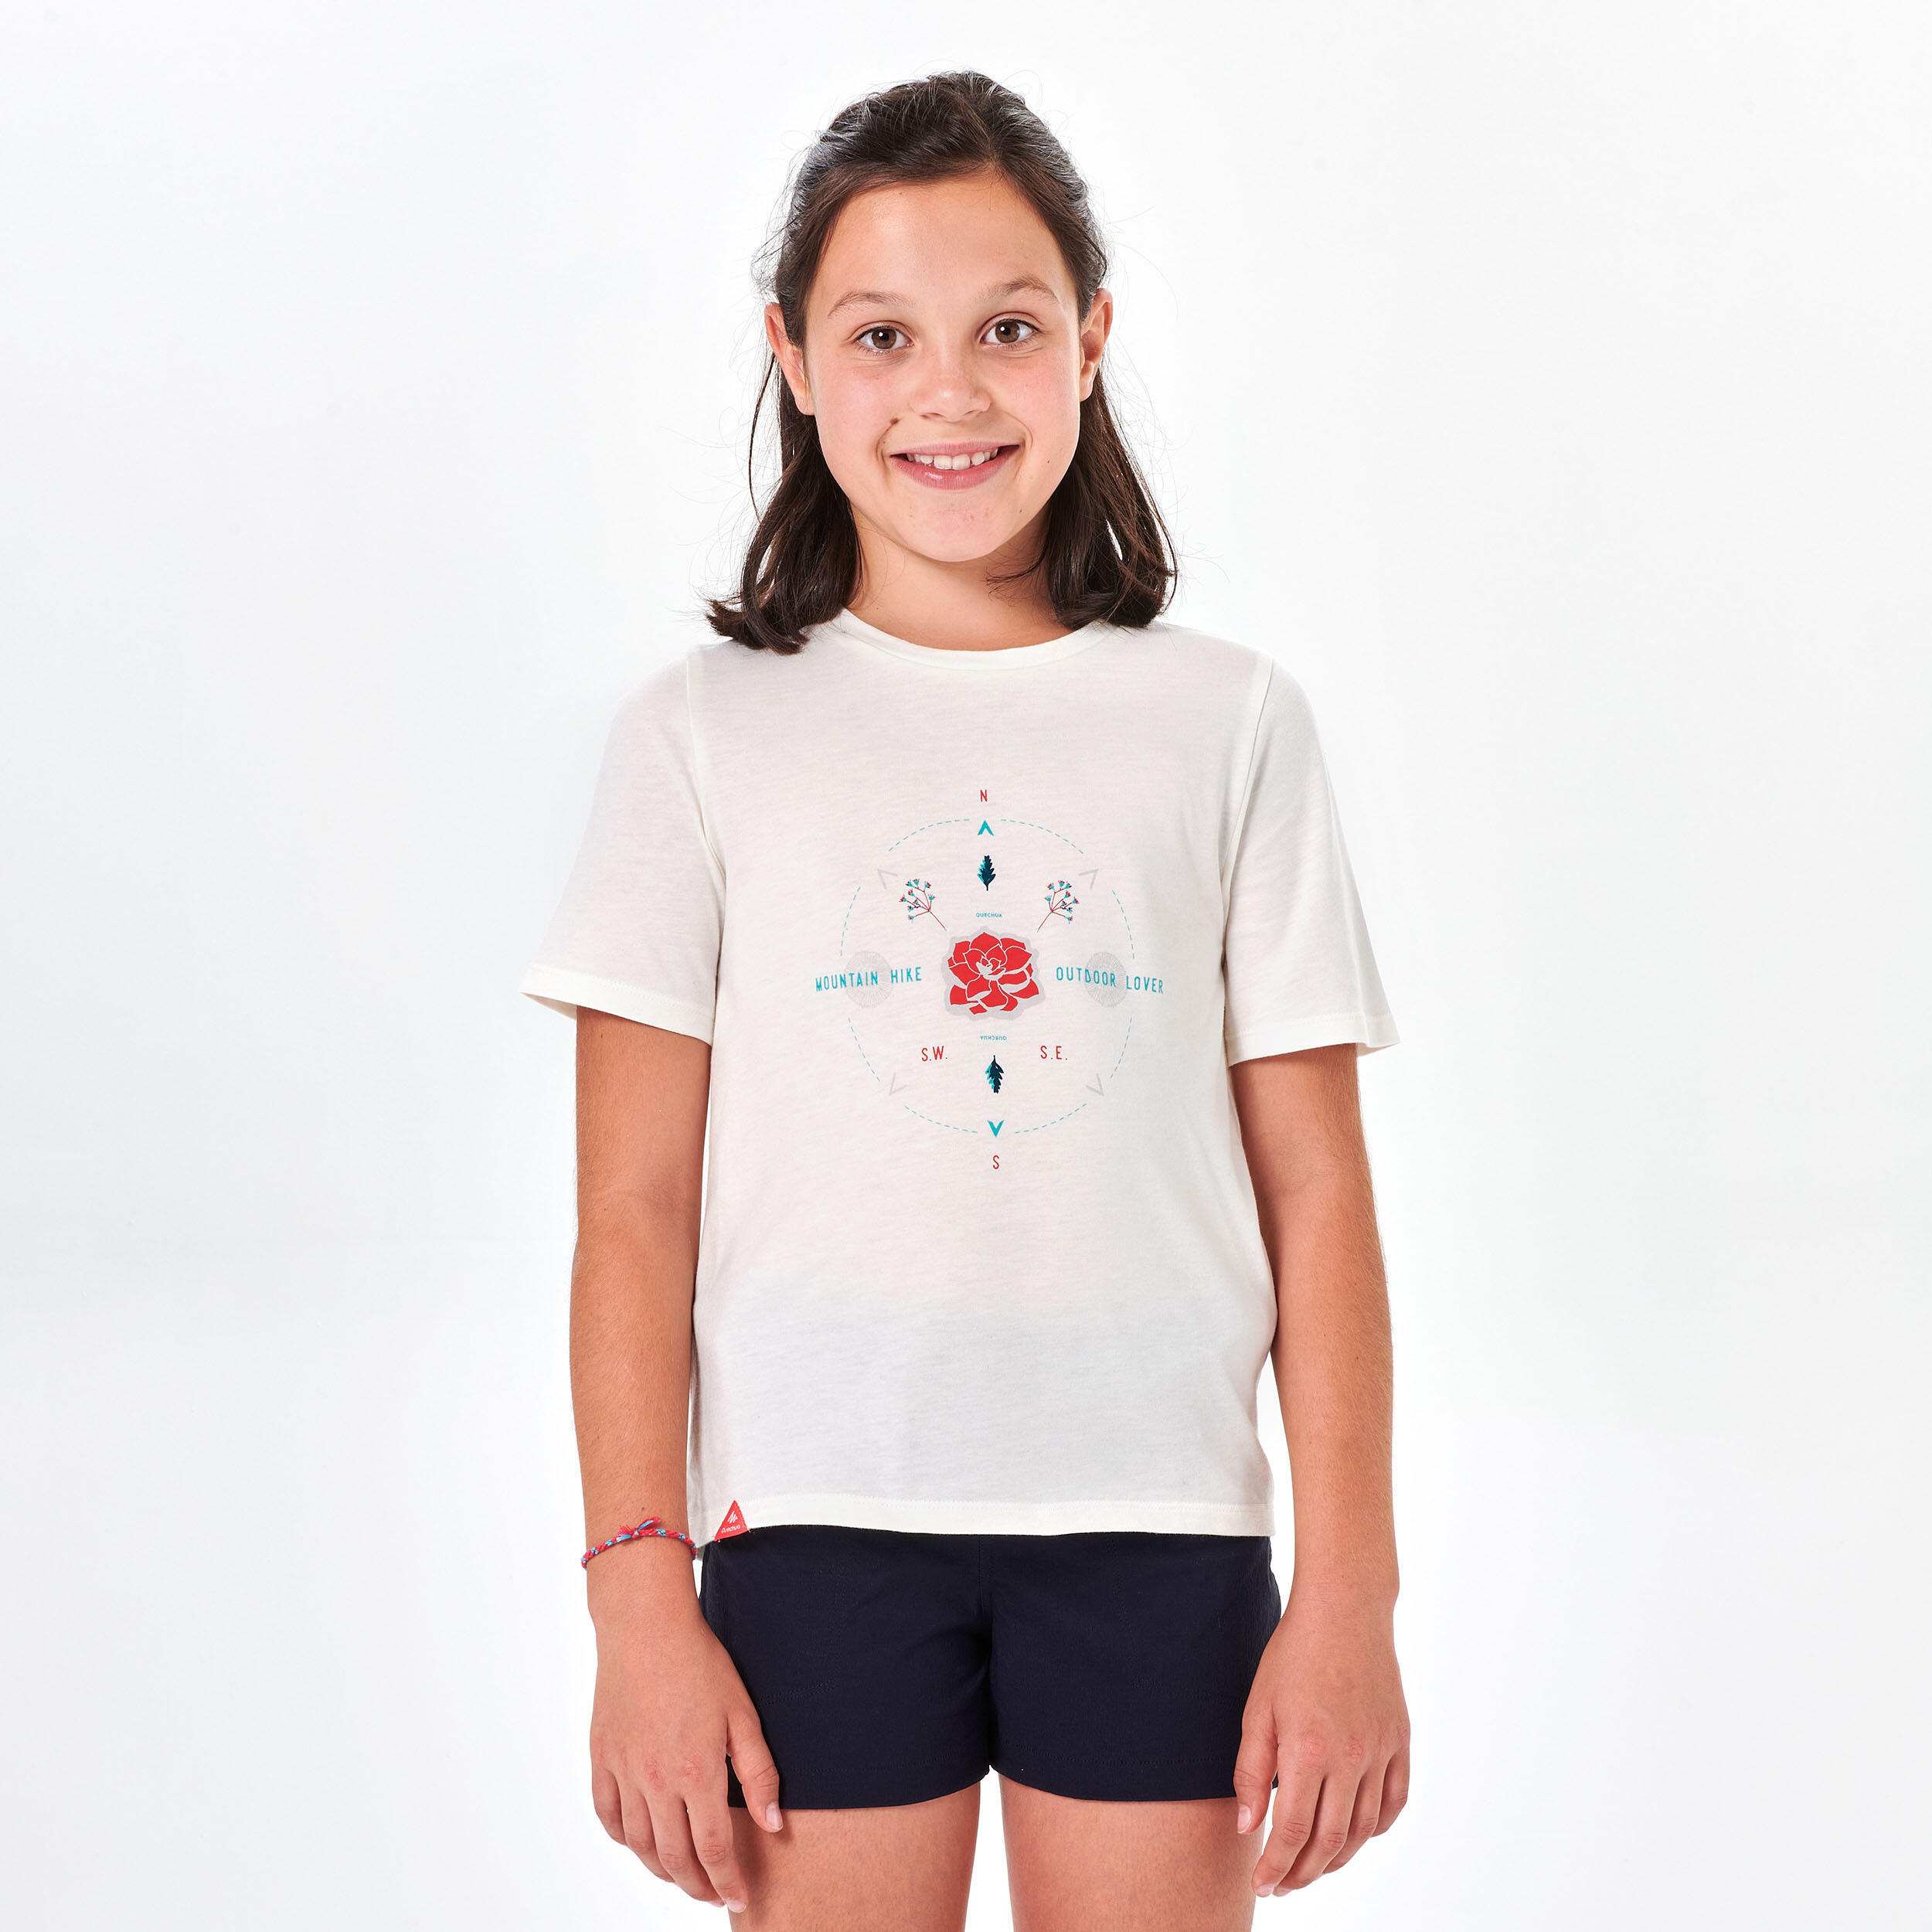 Kids' Hiking T-shirt MH100 7-15 Years - White 2/6